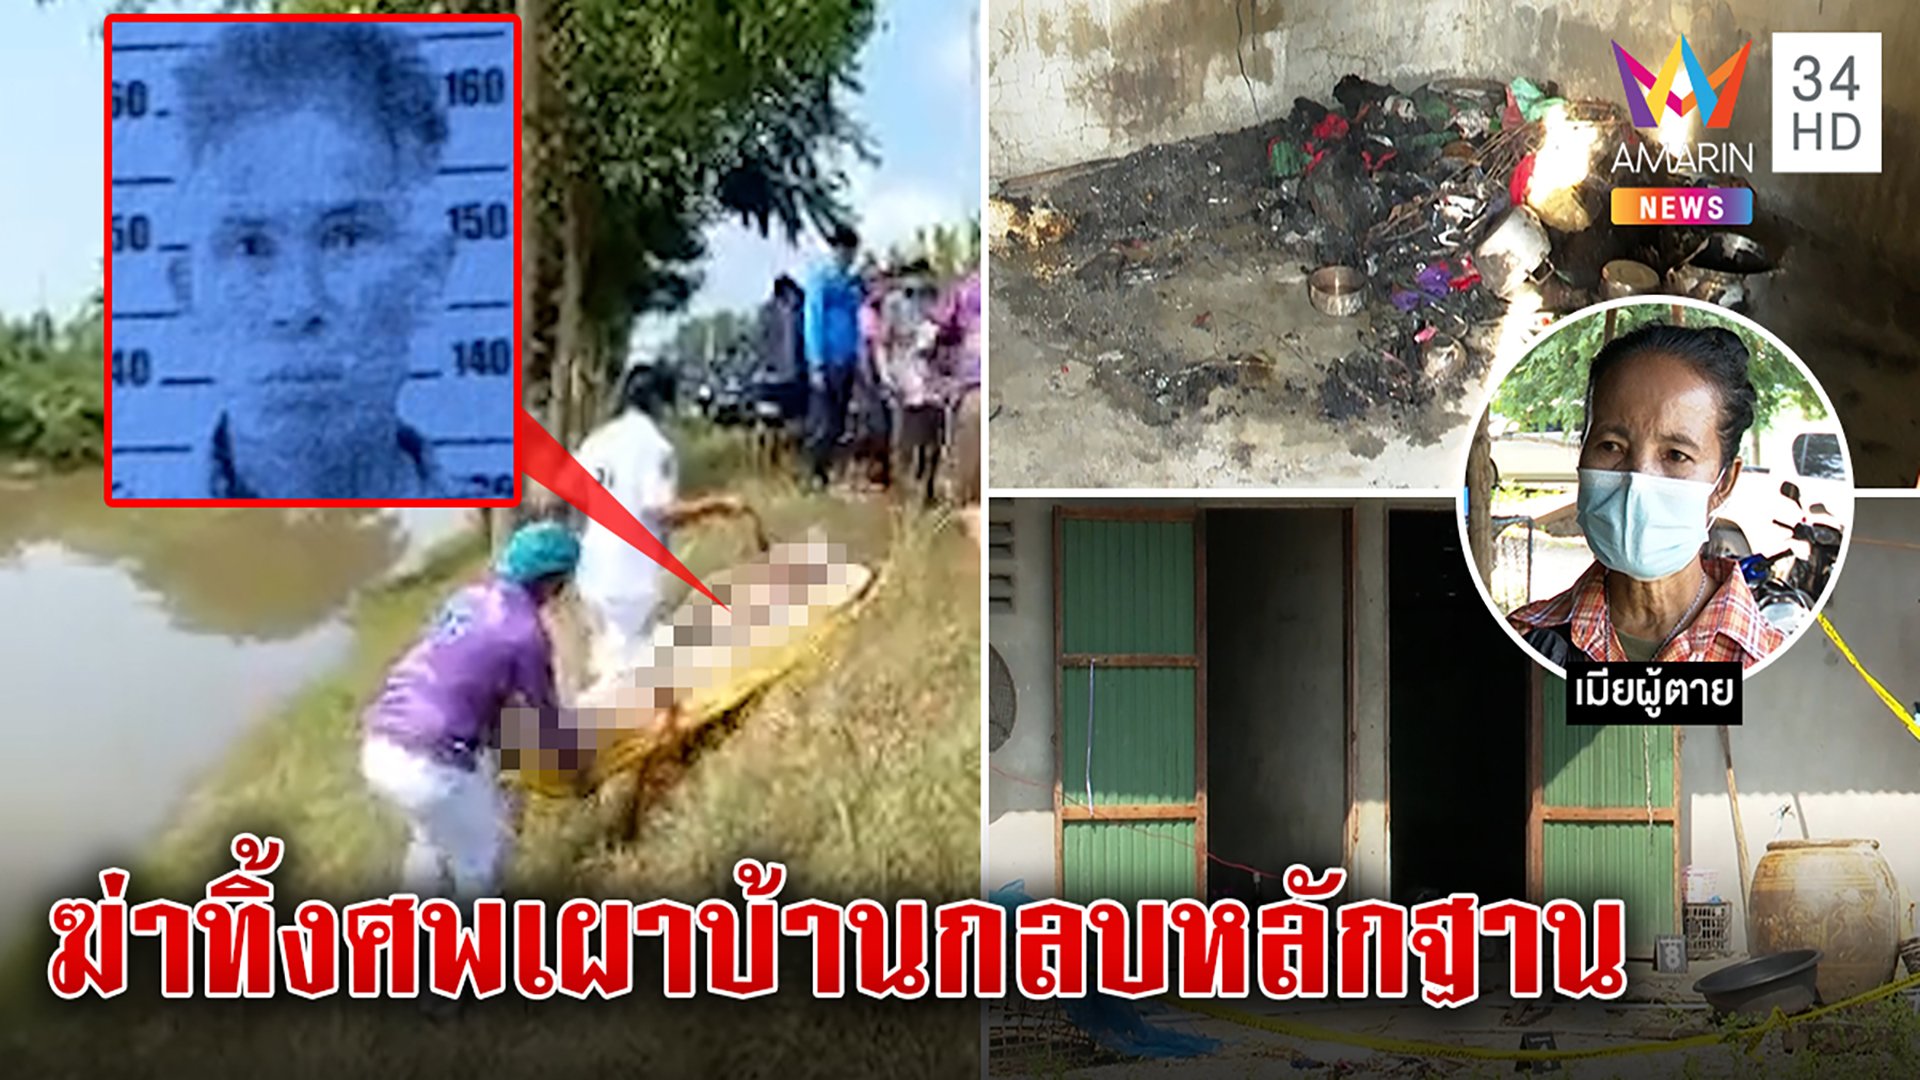 อำพรางโหด! ฆ่าปาดคอหนุ่มคนงานทิ้งน้ำเผาบ้านกลบหลักฐานตะลึงคราบเลือดโผล่ฟ้อง  | ทุบโต๊ะข่าว | 29 พ.ย. 65 | AMARIN TVHD34